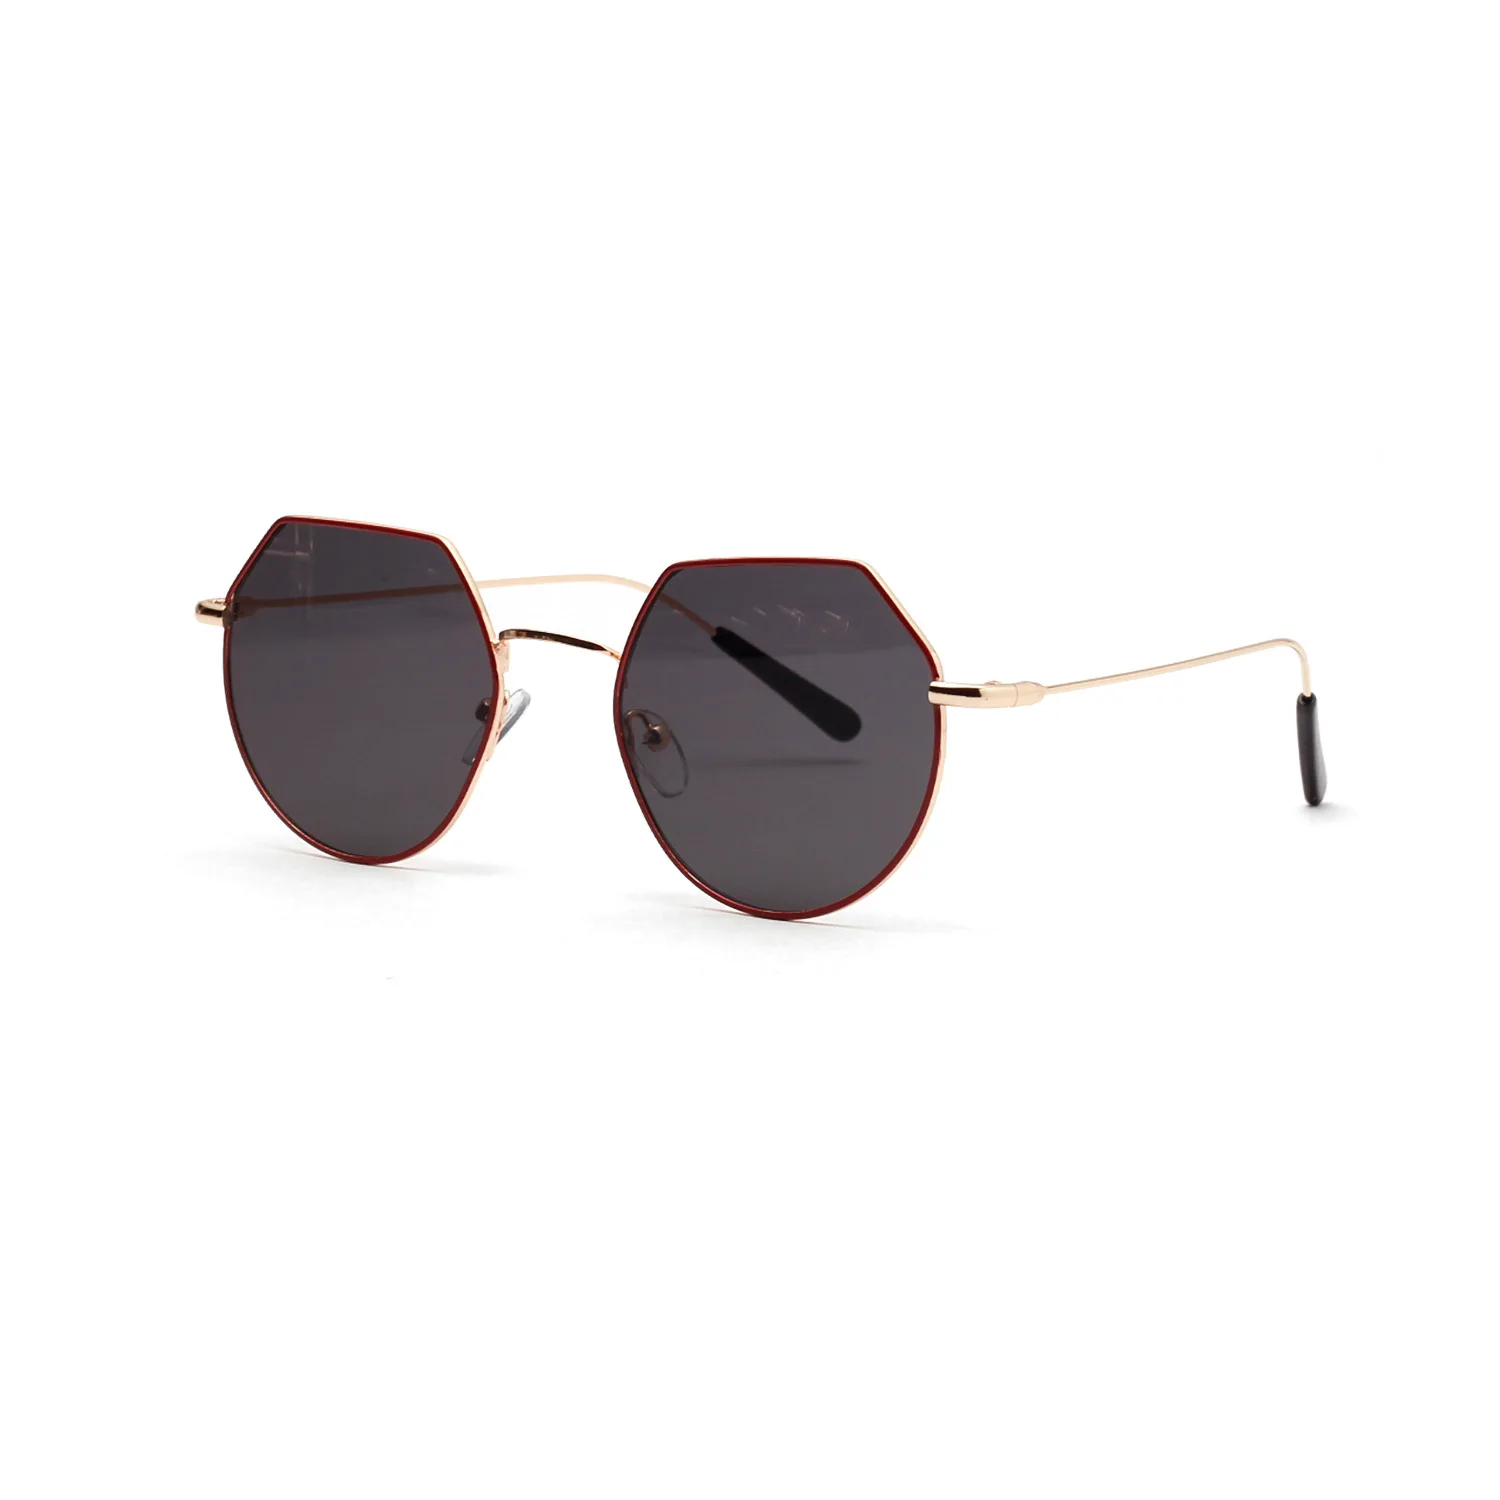 Red Son модные дизайнерские новые солнцезащитные очки женские поляризатор металлическая оправа UV400 очки